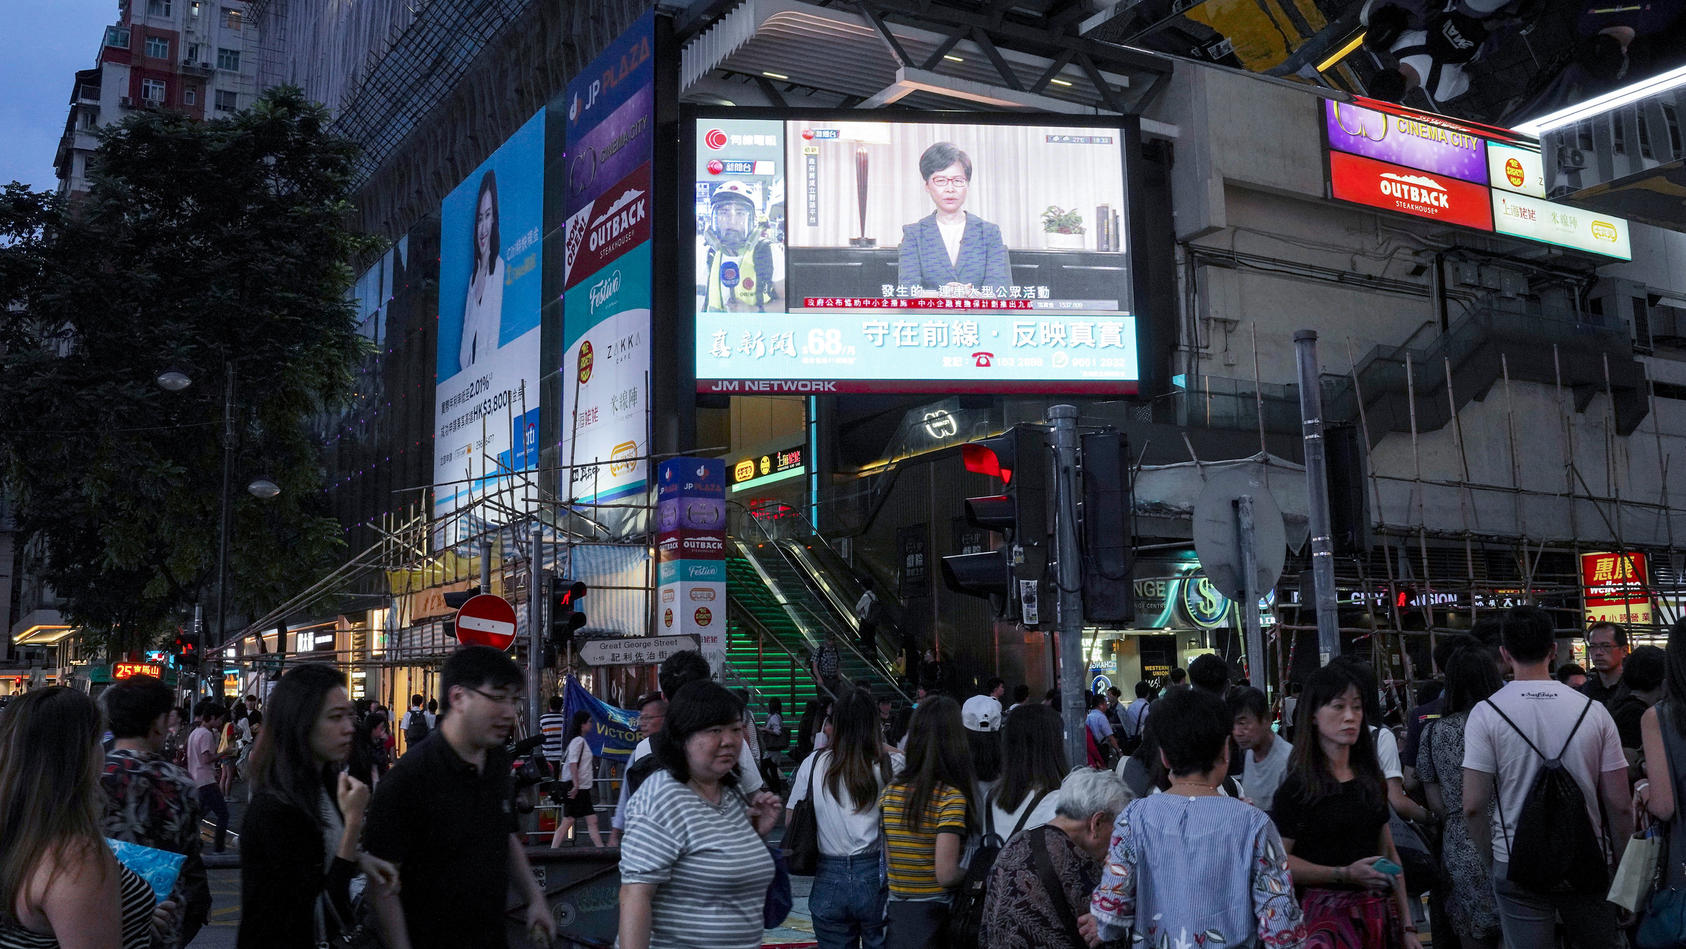 04.09.2019, China, Hongkong: Passanten gehen in der Innenstadt unter einem Bildschirm, auf dem Carrie Lam, Regierungschefin der chinesischen Sonderverwaltungszone Hongkong, bei einer Pressemitteilung zu sehen ist. Hongkongs Regierung hat den Entwurf 